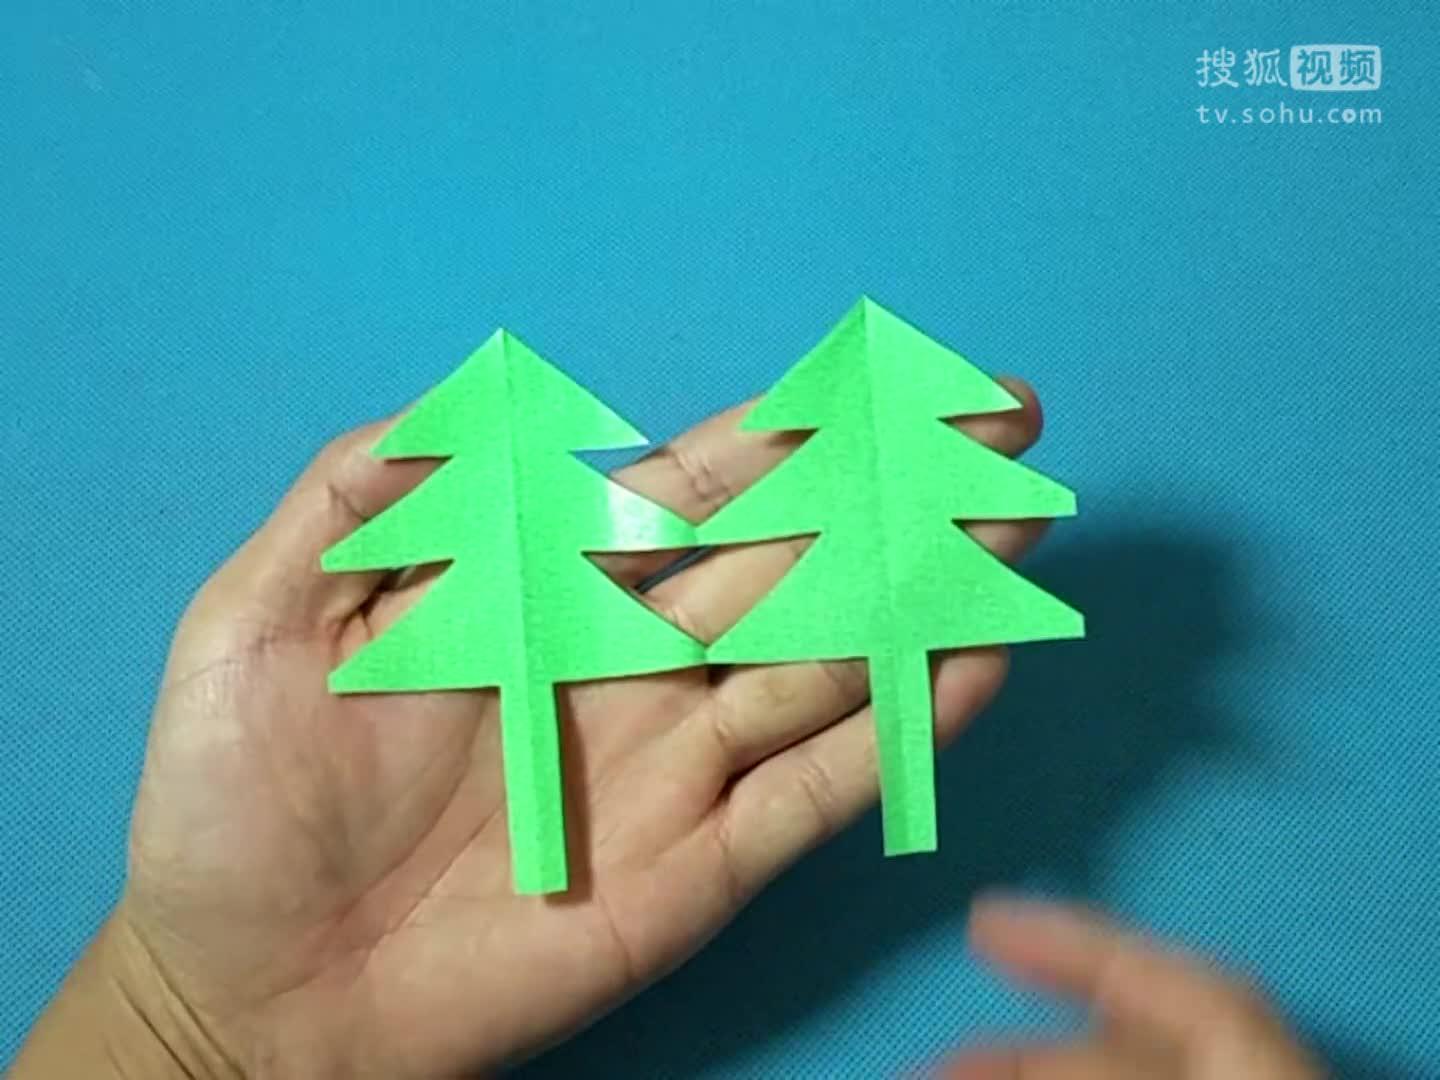 剪纸2棵小树 剪纸视频教程大全 儿童亲子手工diy教学 简单剪纸艺术